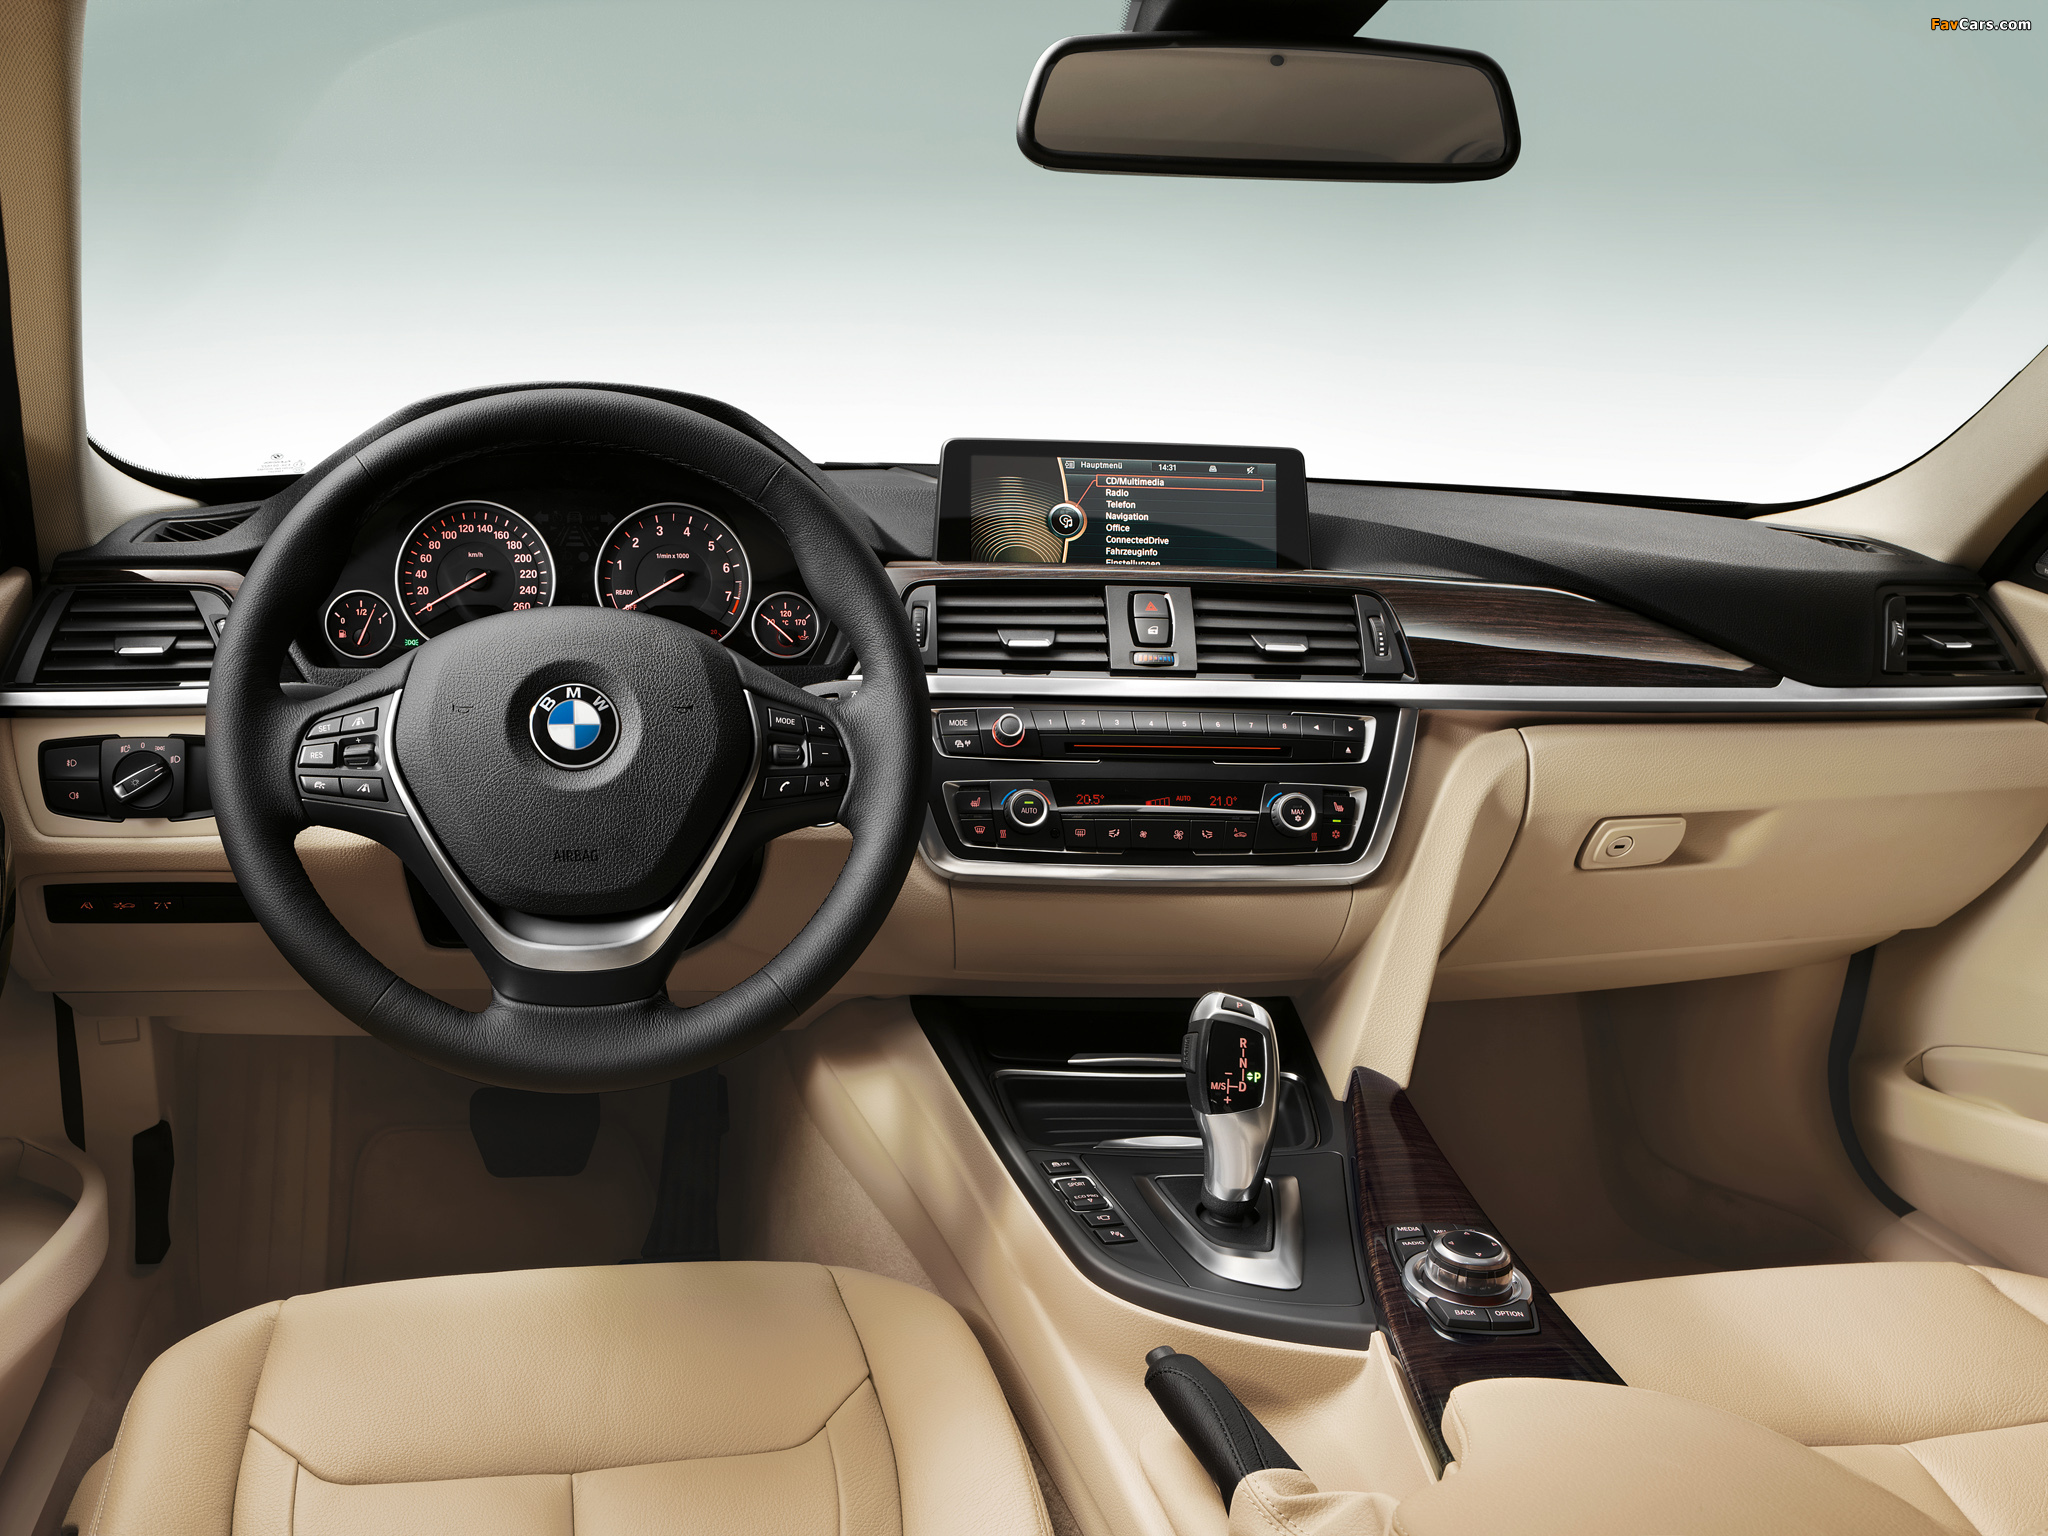 BMW 328i Sedan Luxury Line (F30) 2012 images (2048 x 1536)